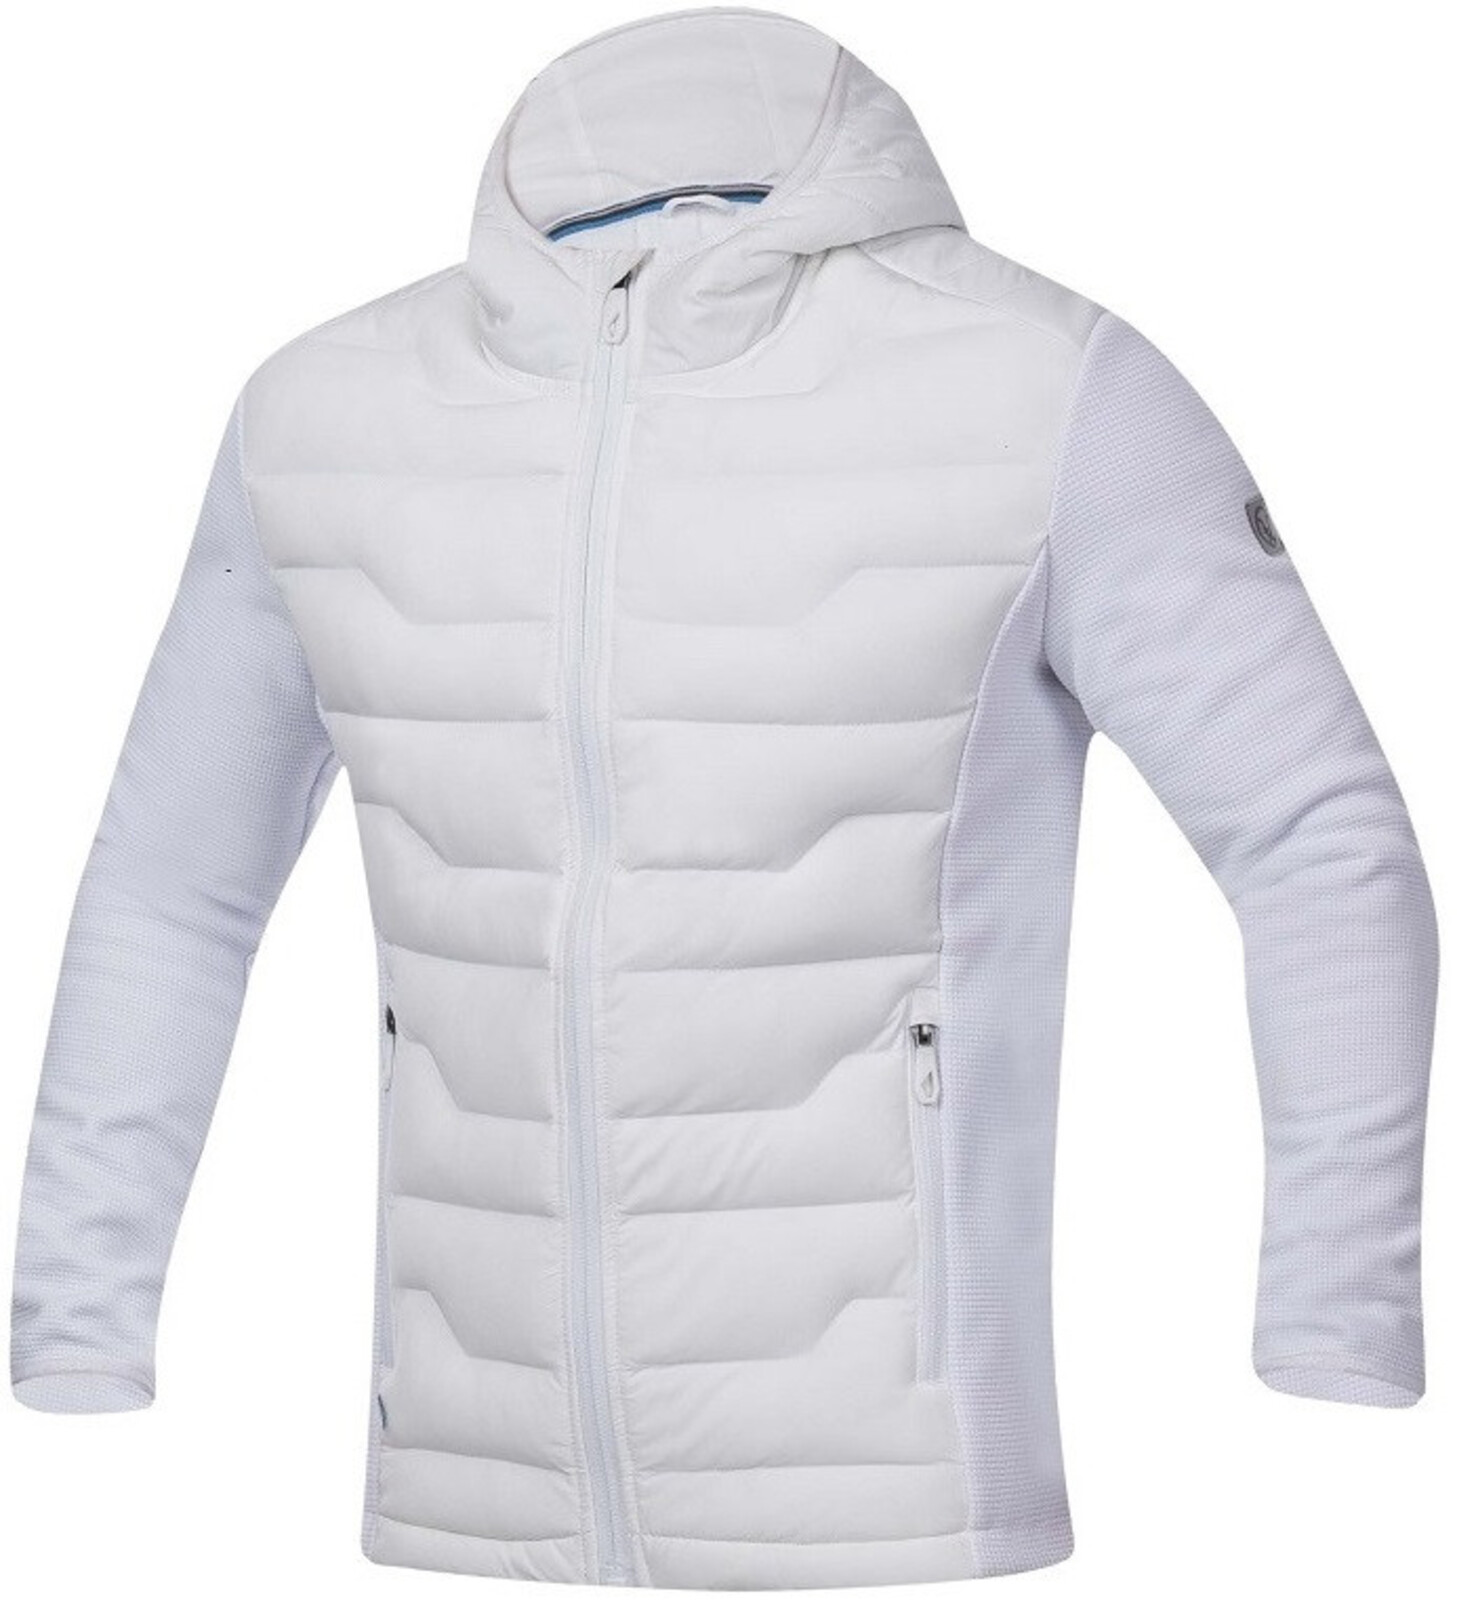 Pánska úpletová bunda Ardon Nypaxx - veľkosť: S, farba: biela